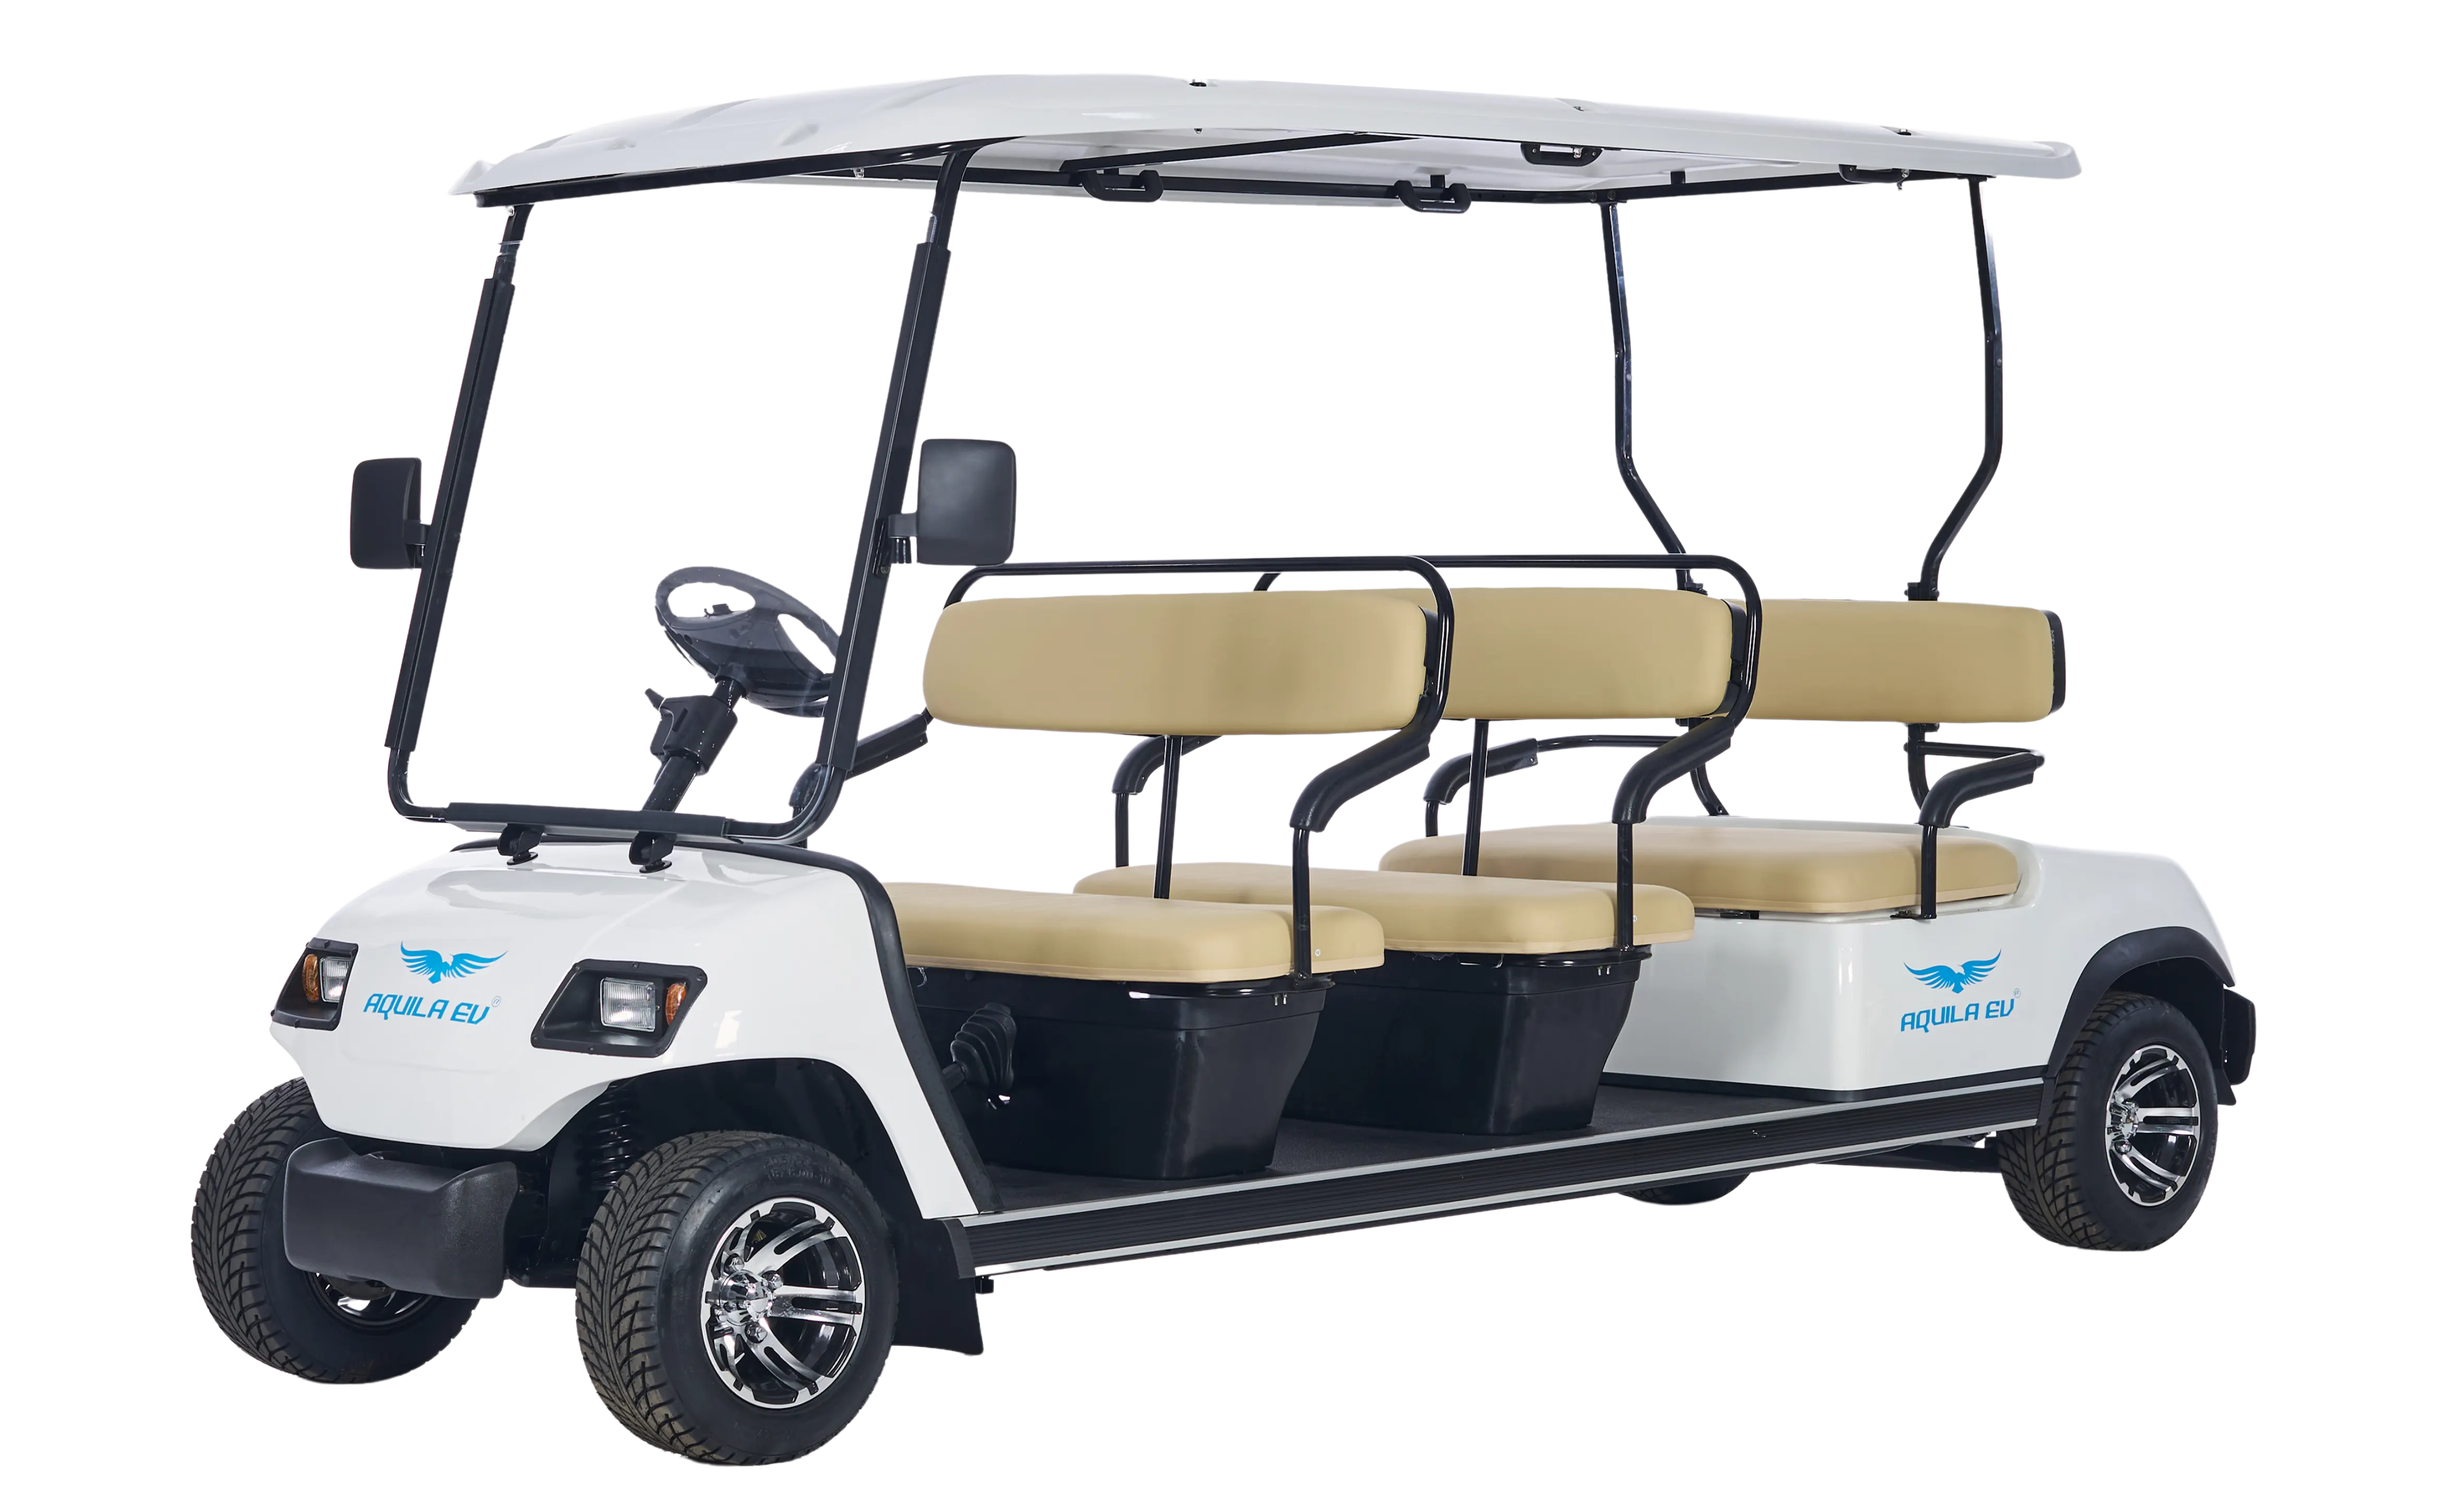  6 seater golf cart - Tri Electric